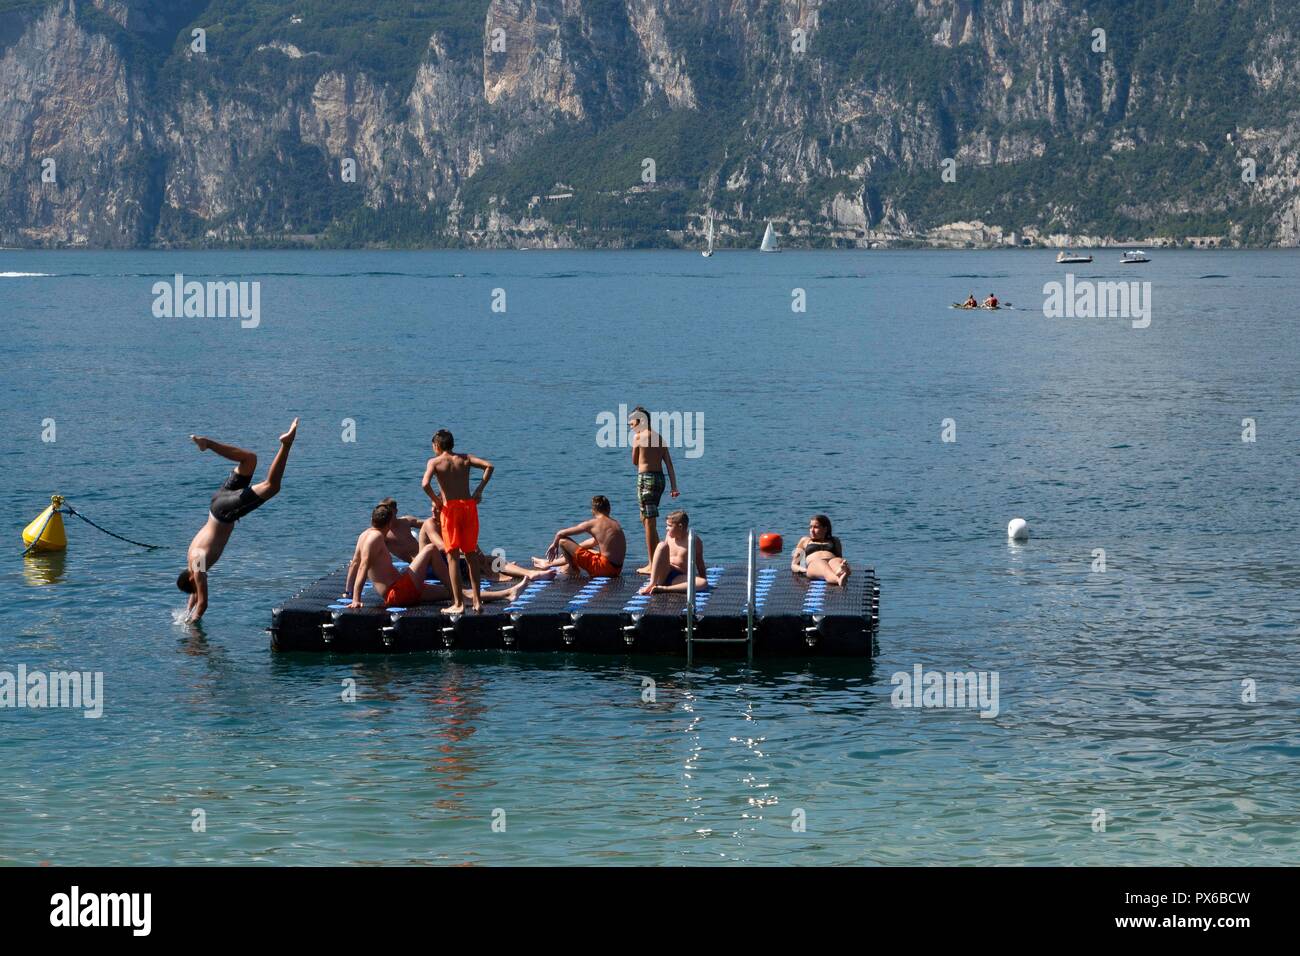 L'Italia, il Lago di Garda, Malcesine, 09.05.2018 giovani godendo di un assolato pomeriggio estivo su una piattaforma di balneazione sul Lago di Garda Foto Stock